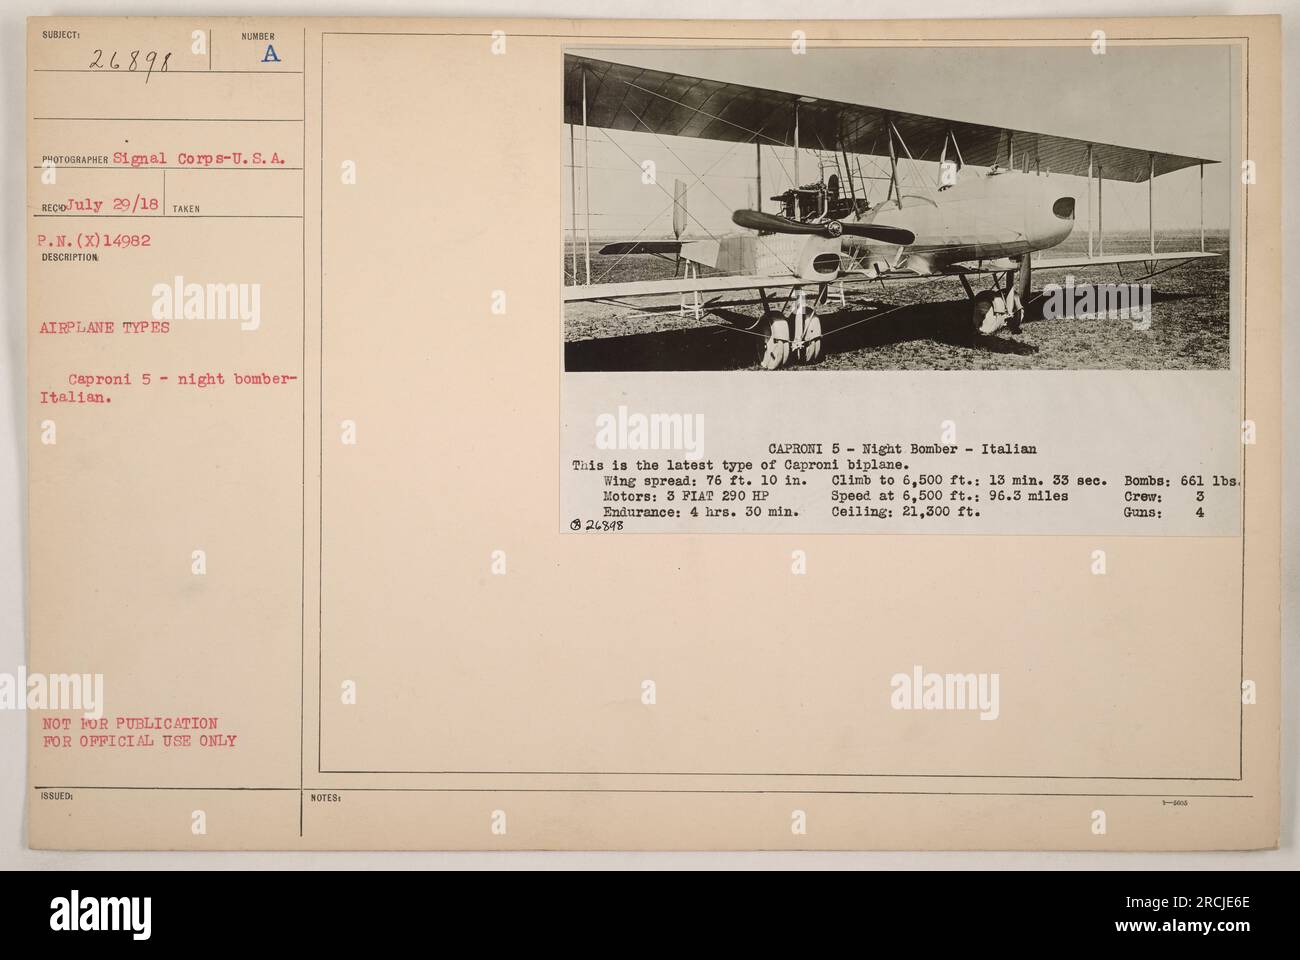 Dieses Foto zeigt einen Caproni-5-Nacht-Bomber, ein italienisches Doppelflugzeug, das im Ersten Weltkrieg verwendet wurde Der Caproni 5 hatte eine Tragweite von 76 Fuß und 10 Zoll und war mit drei PIAT-Motoren ausgestattet, die eine Leistung von 290 PS. Er hatte eine Ausdauer von 4 Stunden und 30 Minuten, eine Aufstiegsrate von 13 Minuten und 33 Sekunden auf 6.500 Fuß, eine Geschwindigkeit von 96,3 Meilen auf 6.500 Fuß, eine Decke von 21.300 Fuß und eine Nutzlast von 661 lbs. Die Besatzung bestand aus drei Mitgliedern und das Flugzeug war mit vier Waffen bewaffnet. Stockfoto